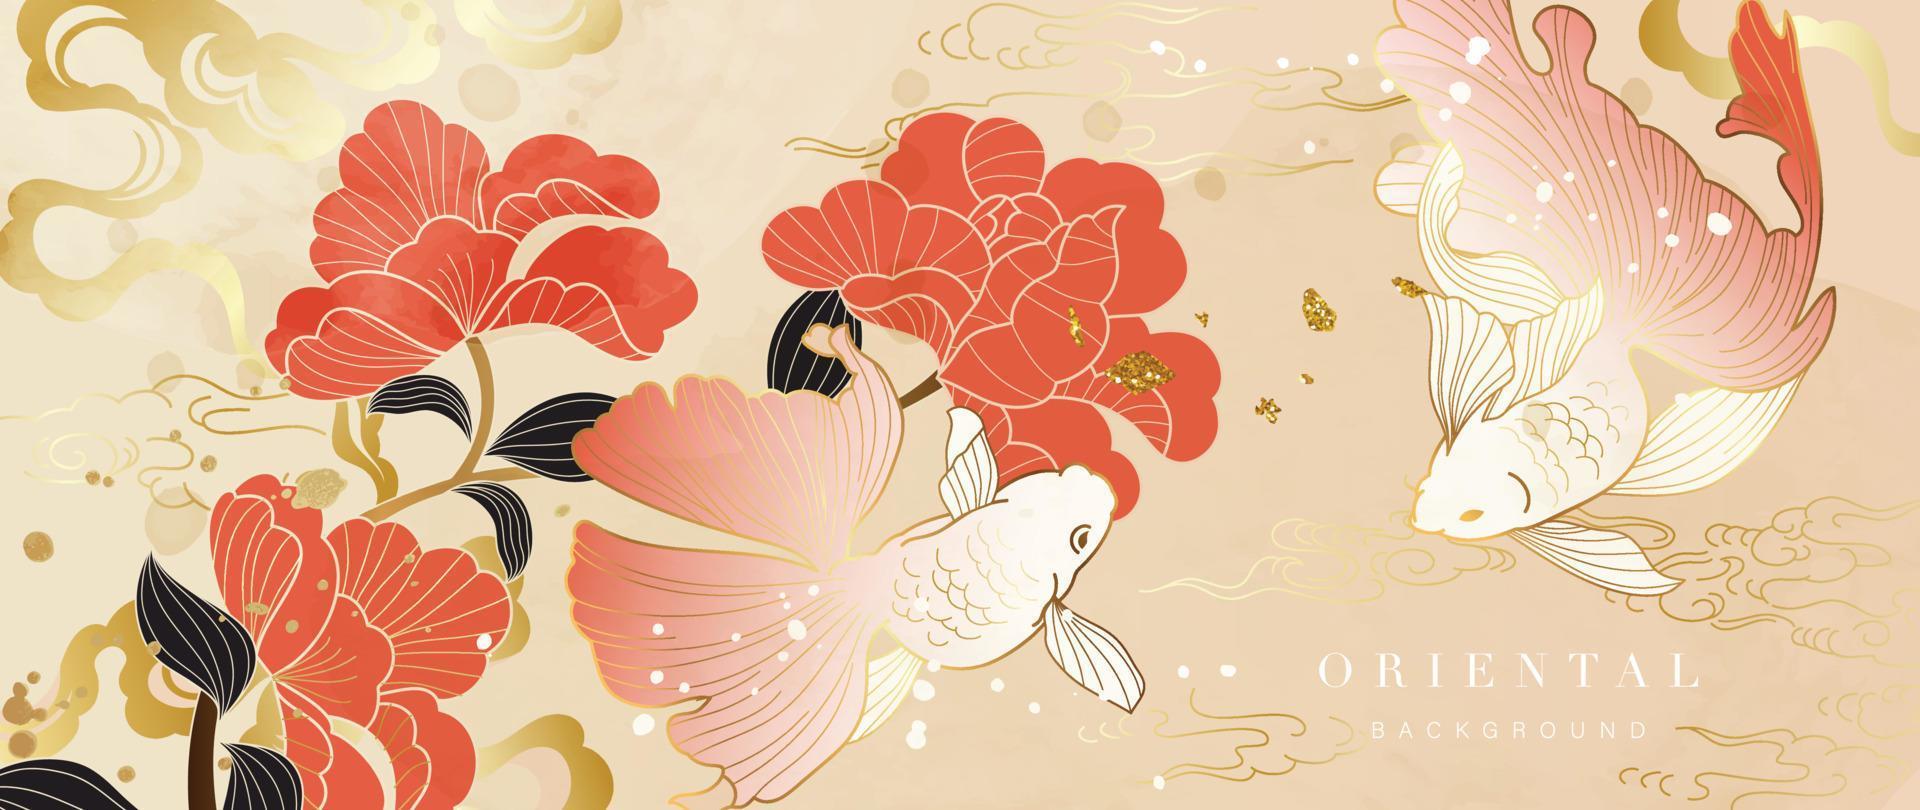 lyx guld orientalisk stil bakgrund vektor. tapet design med elegant kinesisk guldfisk och blommor med orientalisk lutning guld vatten Vinka textur. design illustration för dekoration, vägg dekor. vektor